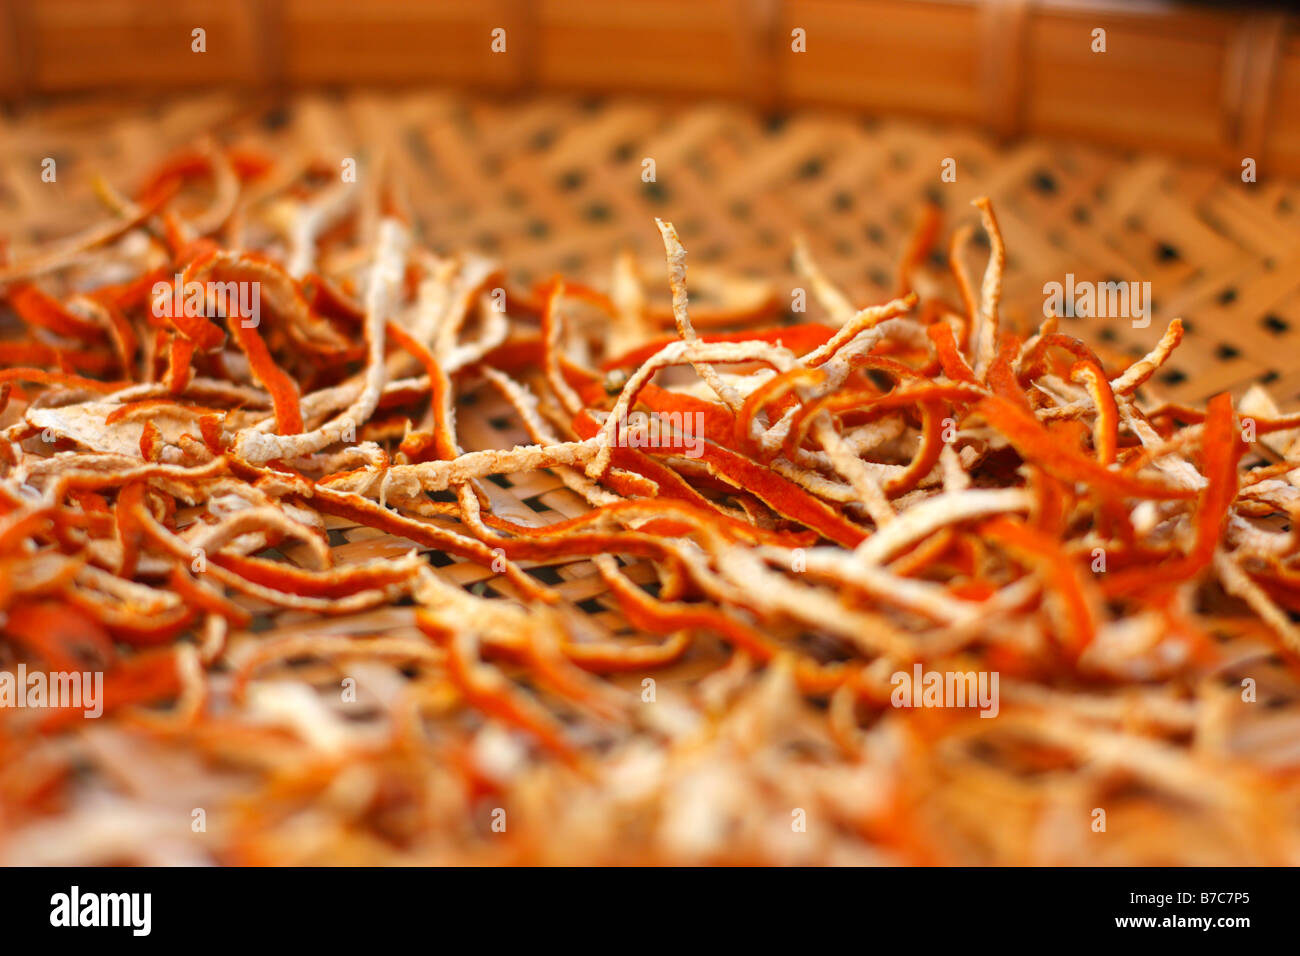 Le séchage des écorces d'Orange dans un panier de séchage. Banque D'Images